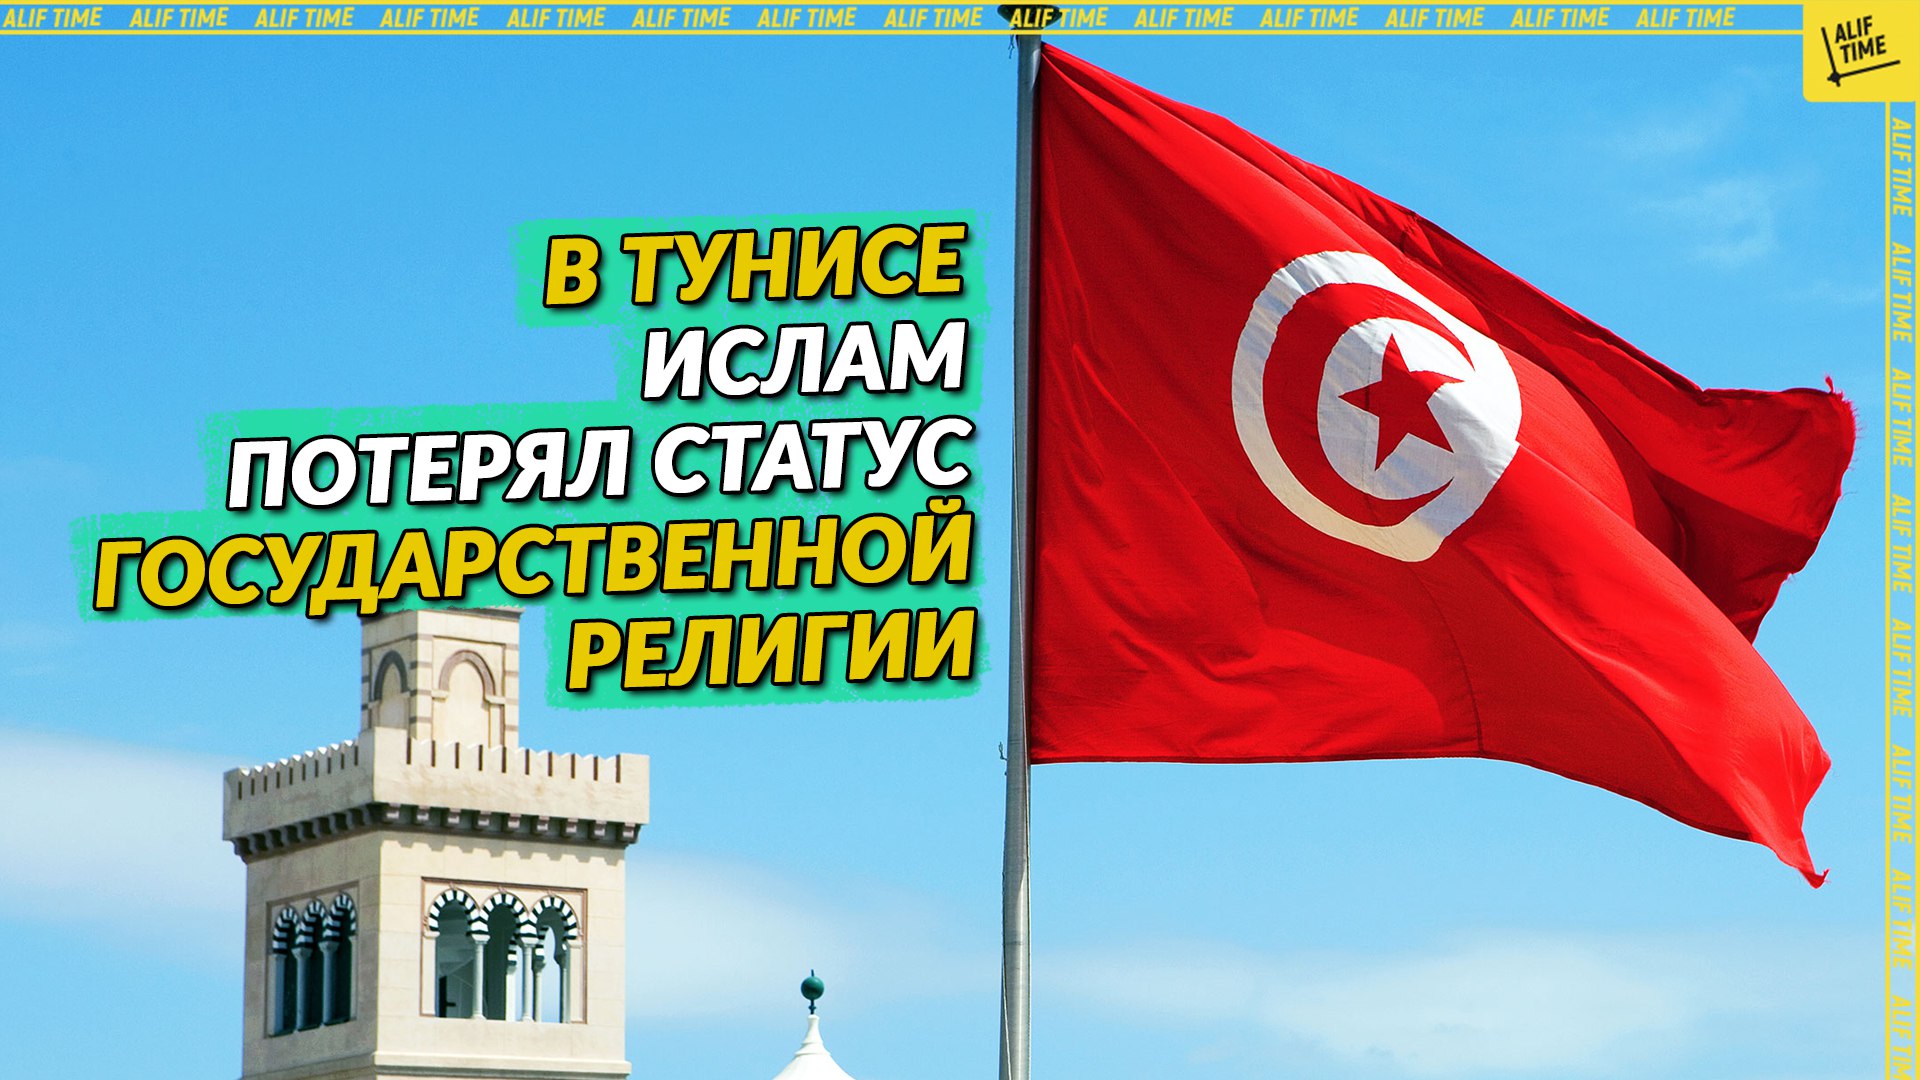 В Тунисе ислам потерял статус государственной религии